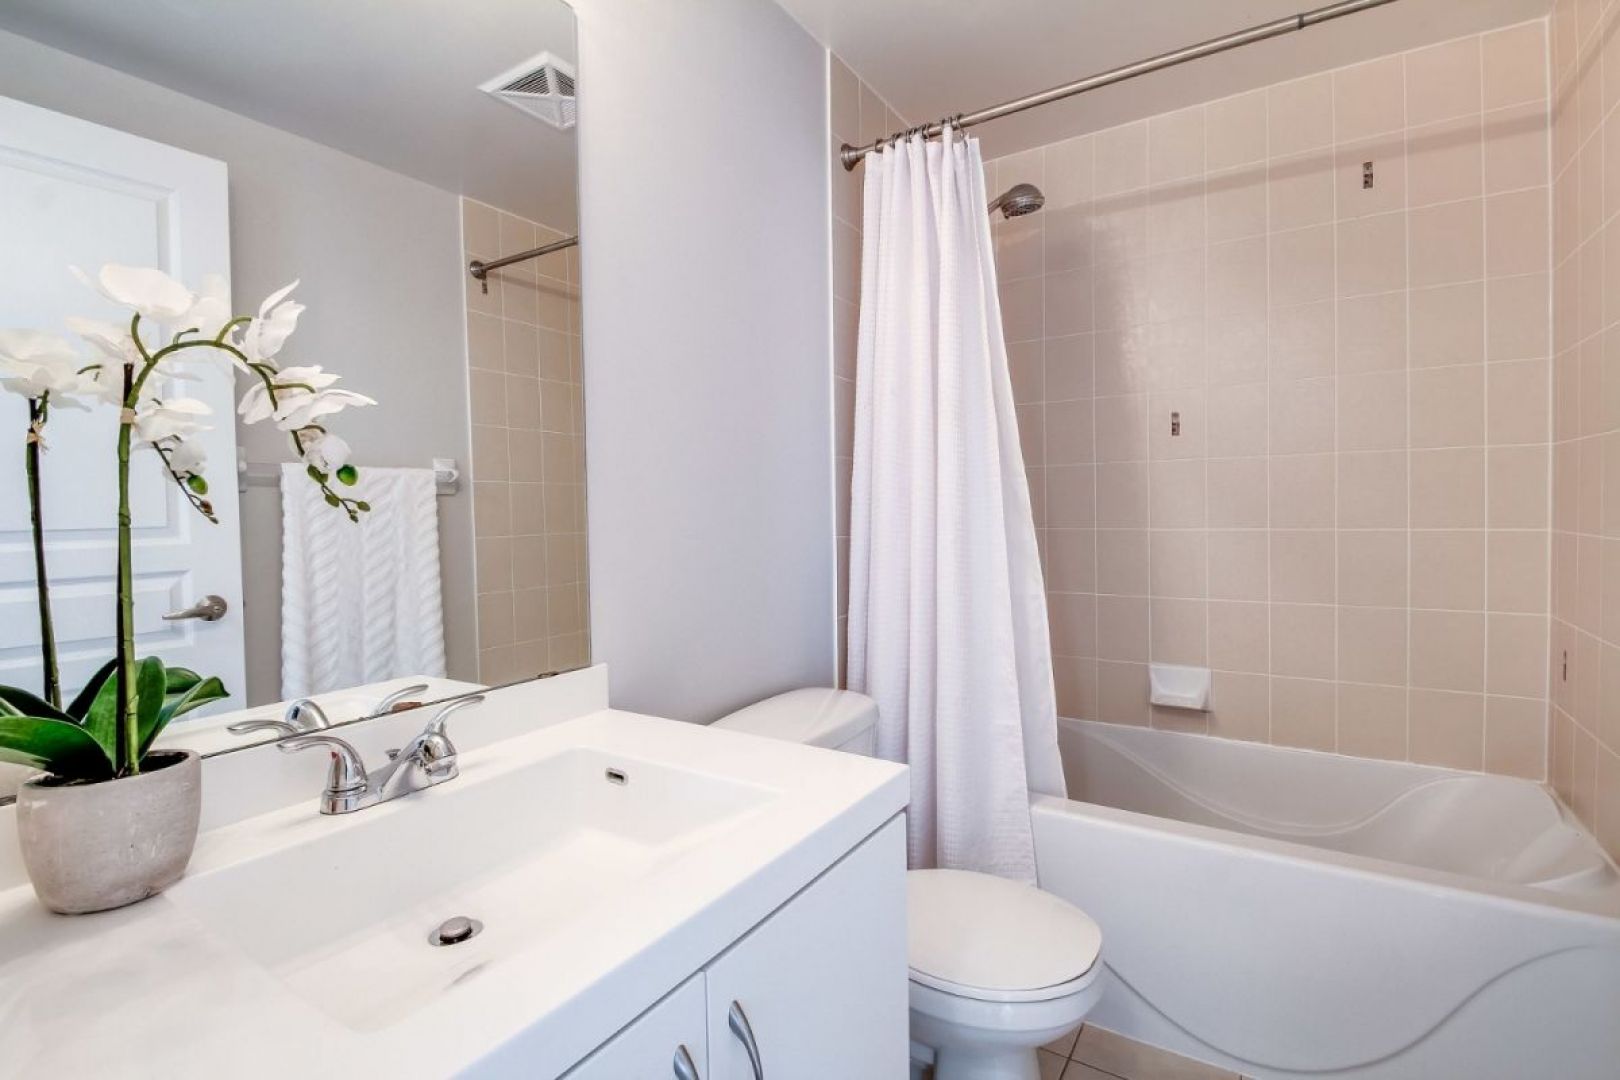 Чтобы обеспечить в ванной приятный микроклимат, регулярно проветривайте помещение.  Фото  Pixabay